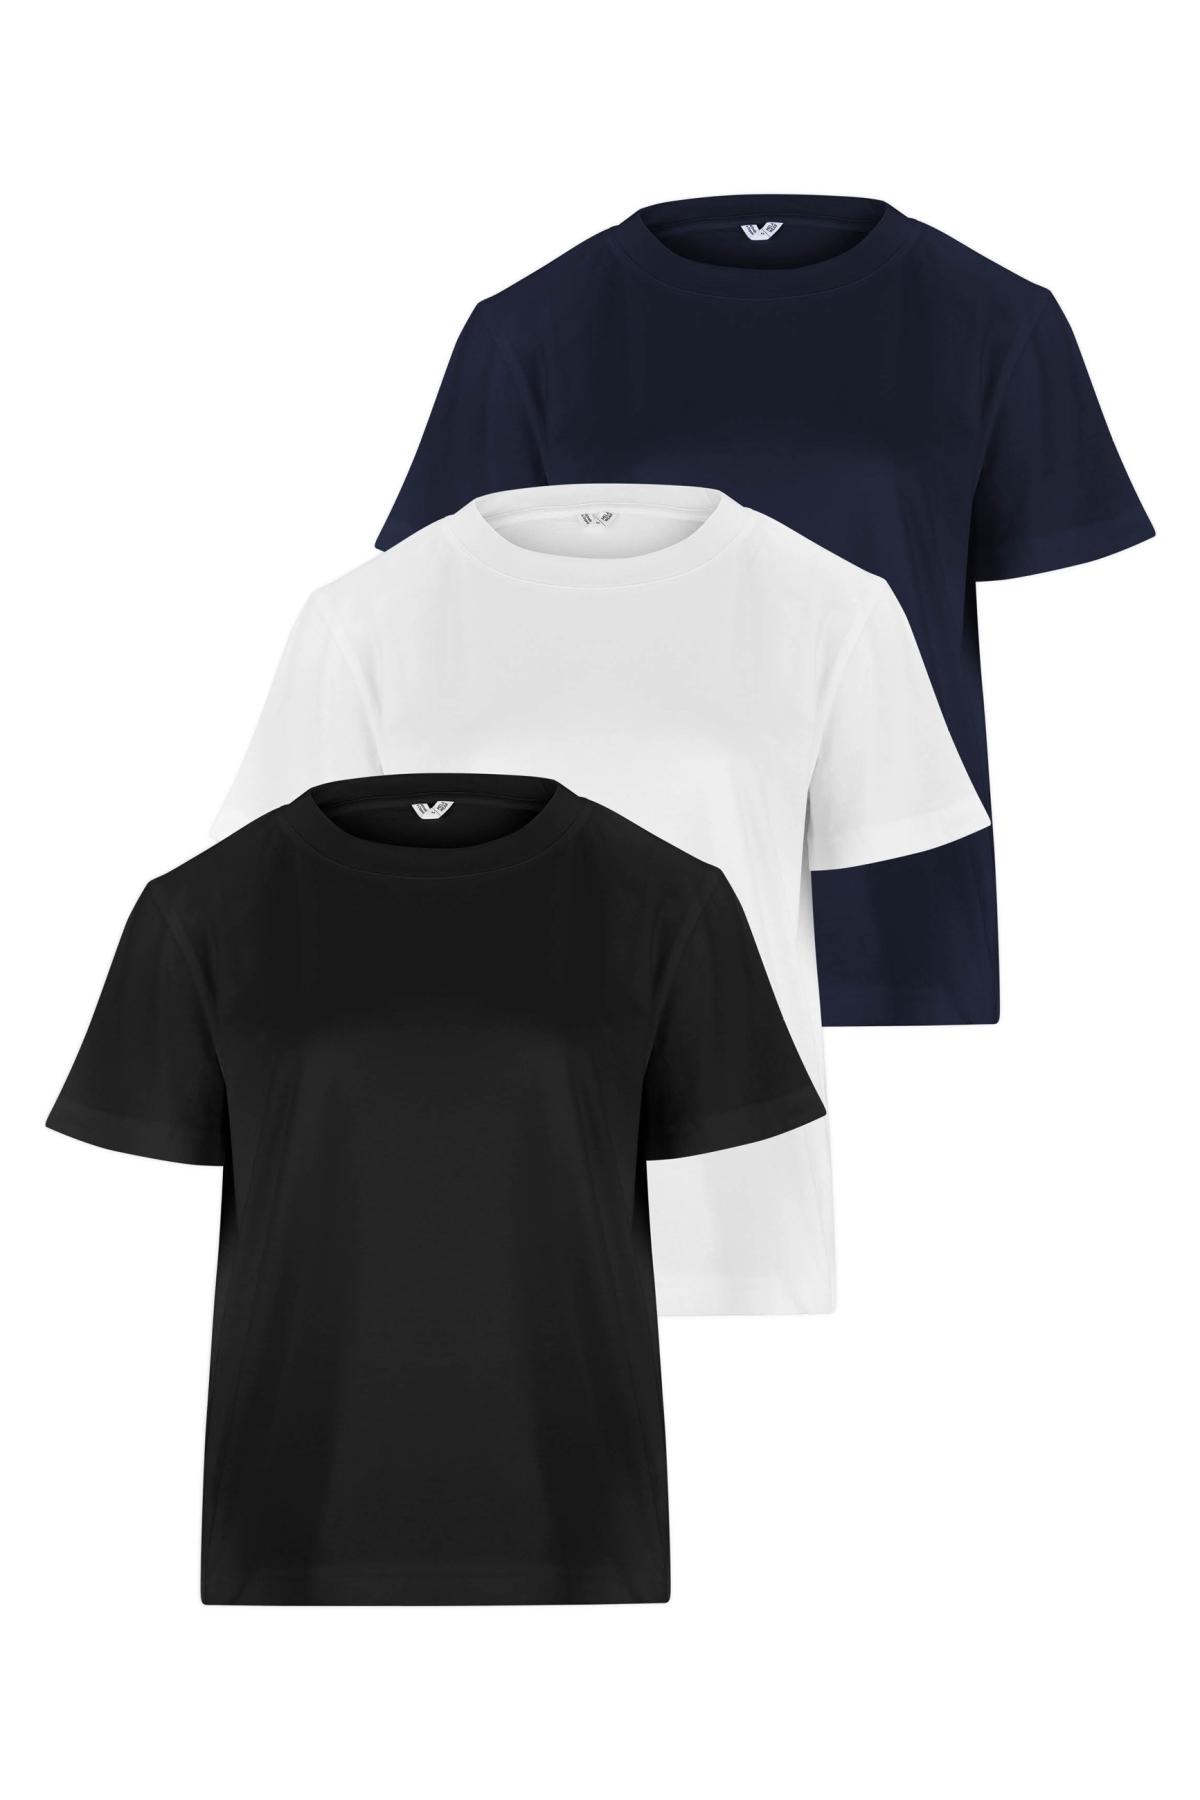 MELA Damen vegan Multipack T-Shirt Khira Schwarz Weiß Navy